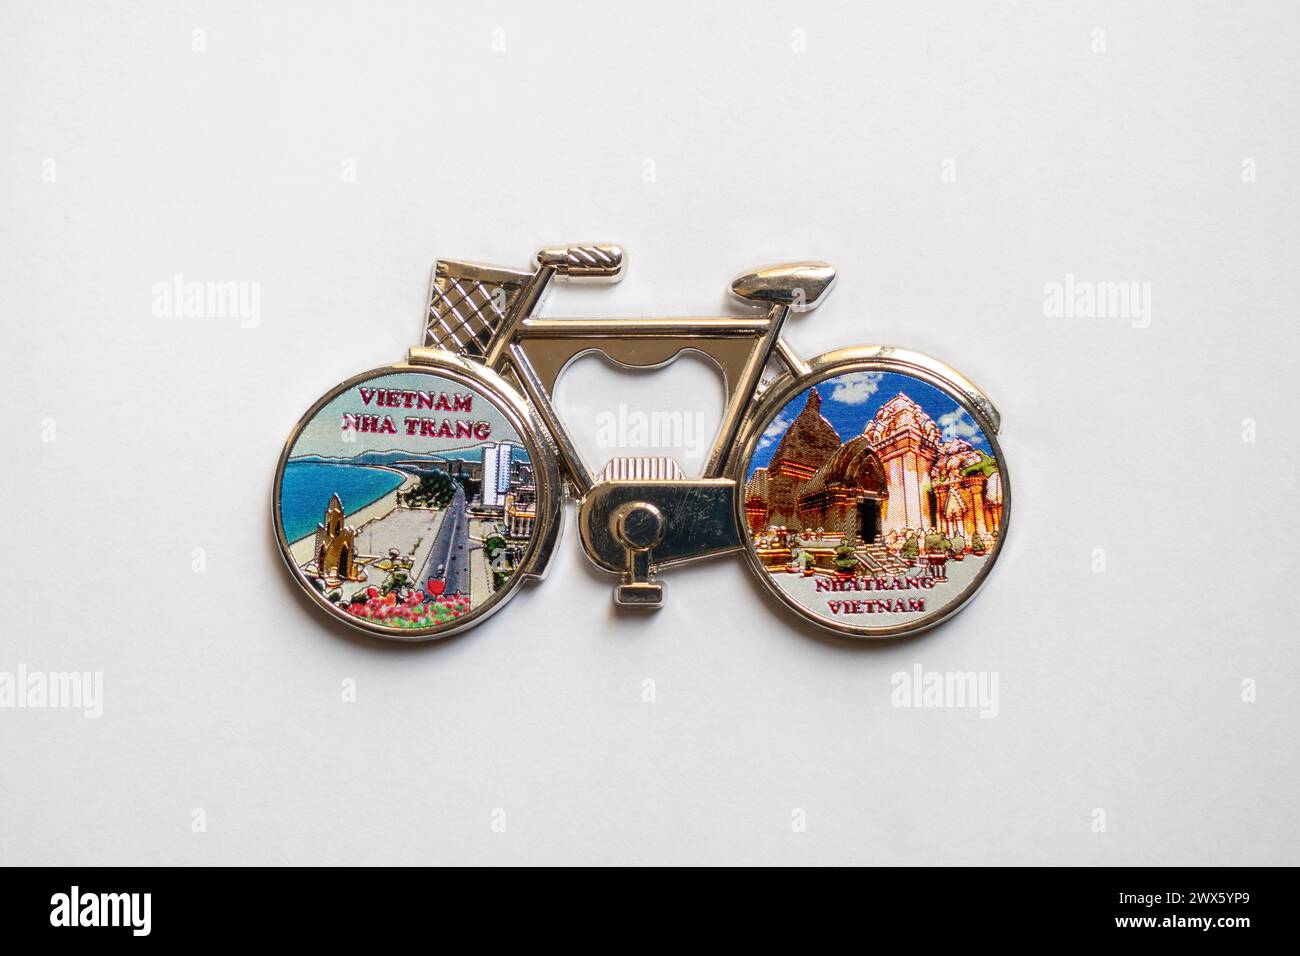 Fridge magnet of Vietnam. Souvenir for tourists. Stock Photo